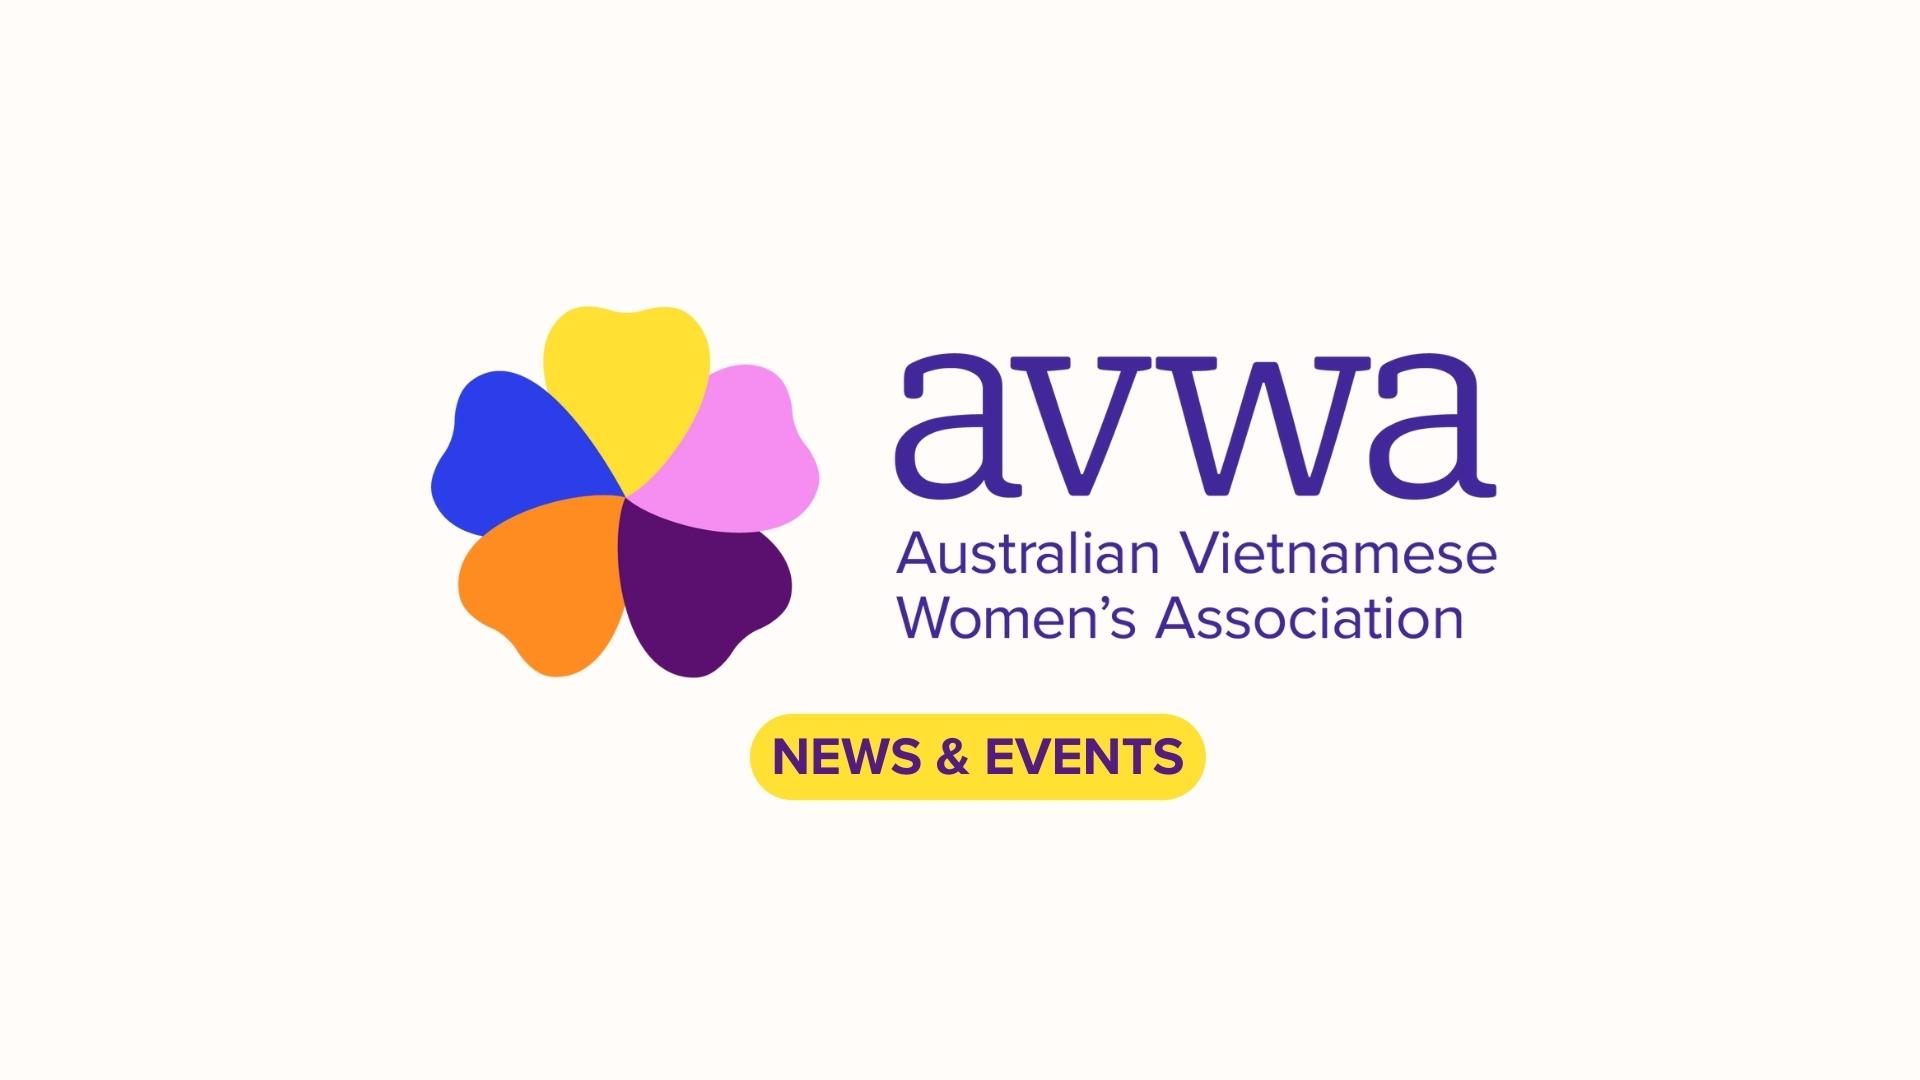 Thủ hiến Victoria Daniel Andrews khen tặng Hội Phụ Nữ Việt Úc “tận tâm vì cộng đồng”